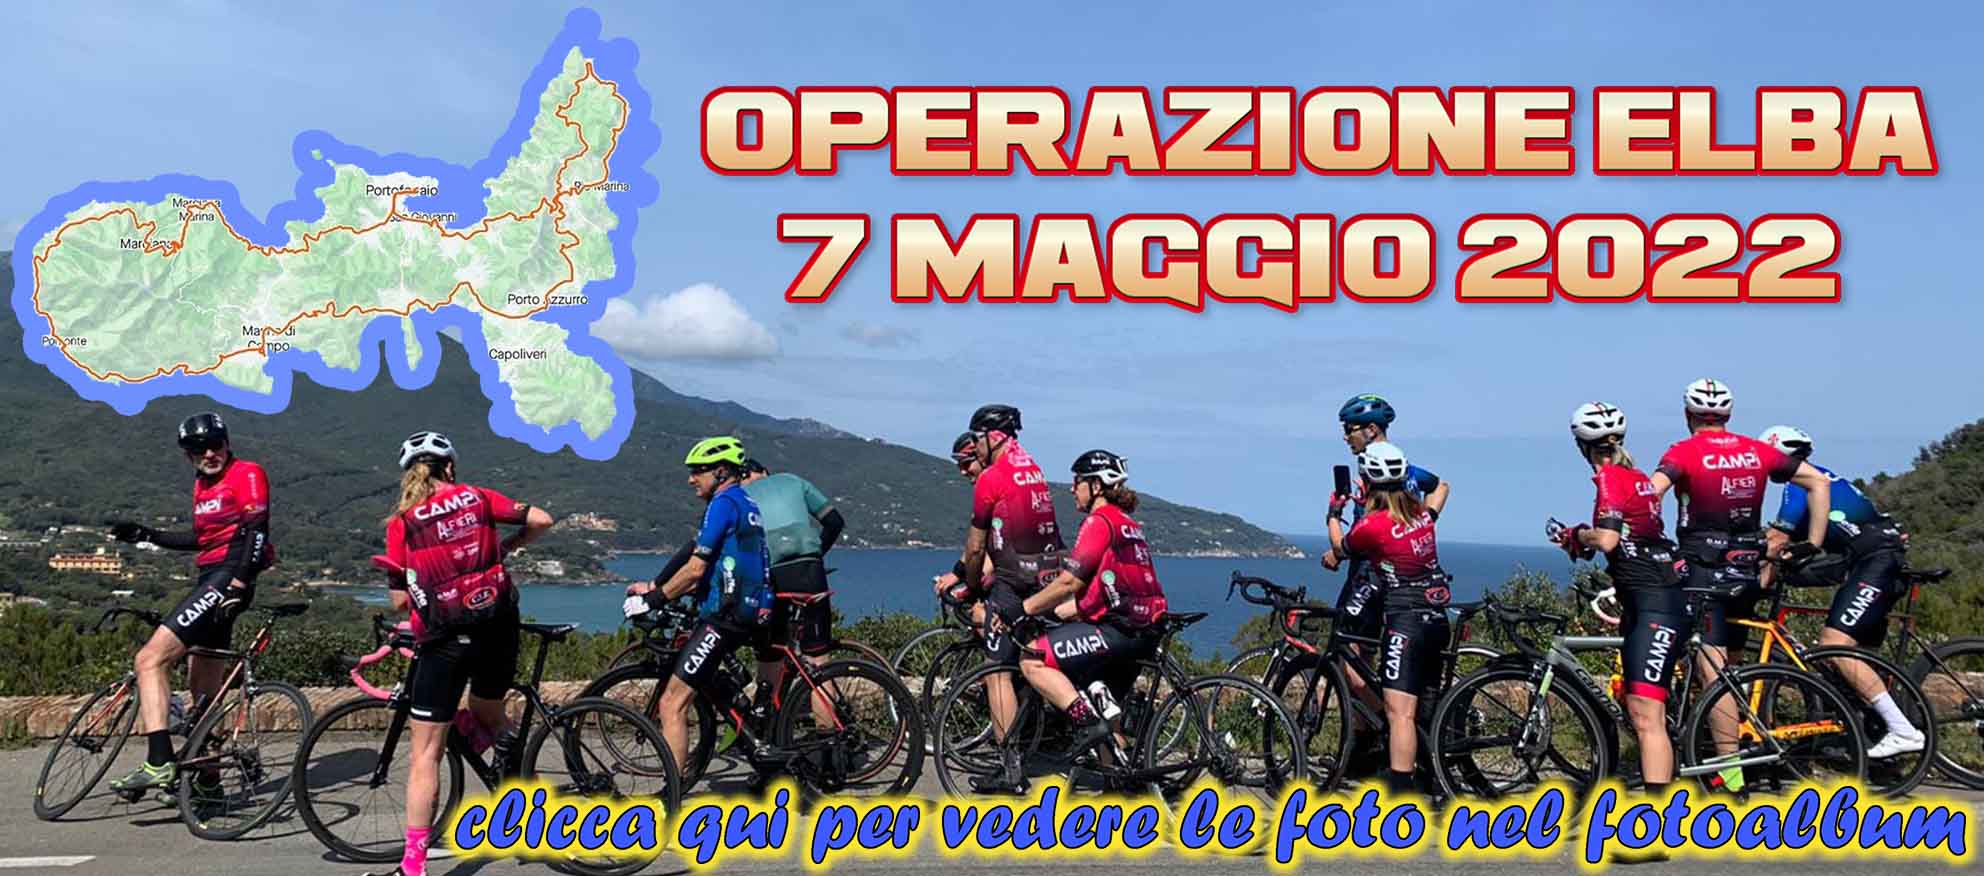 220507_Banner_Operazione_Elba